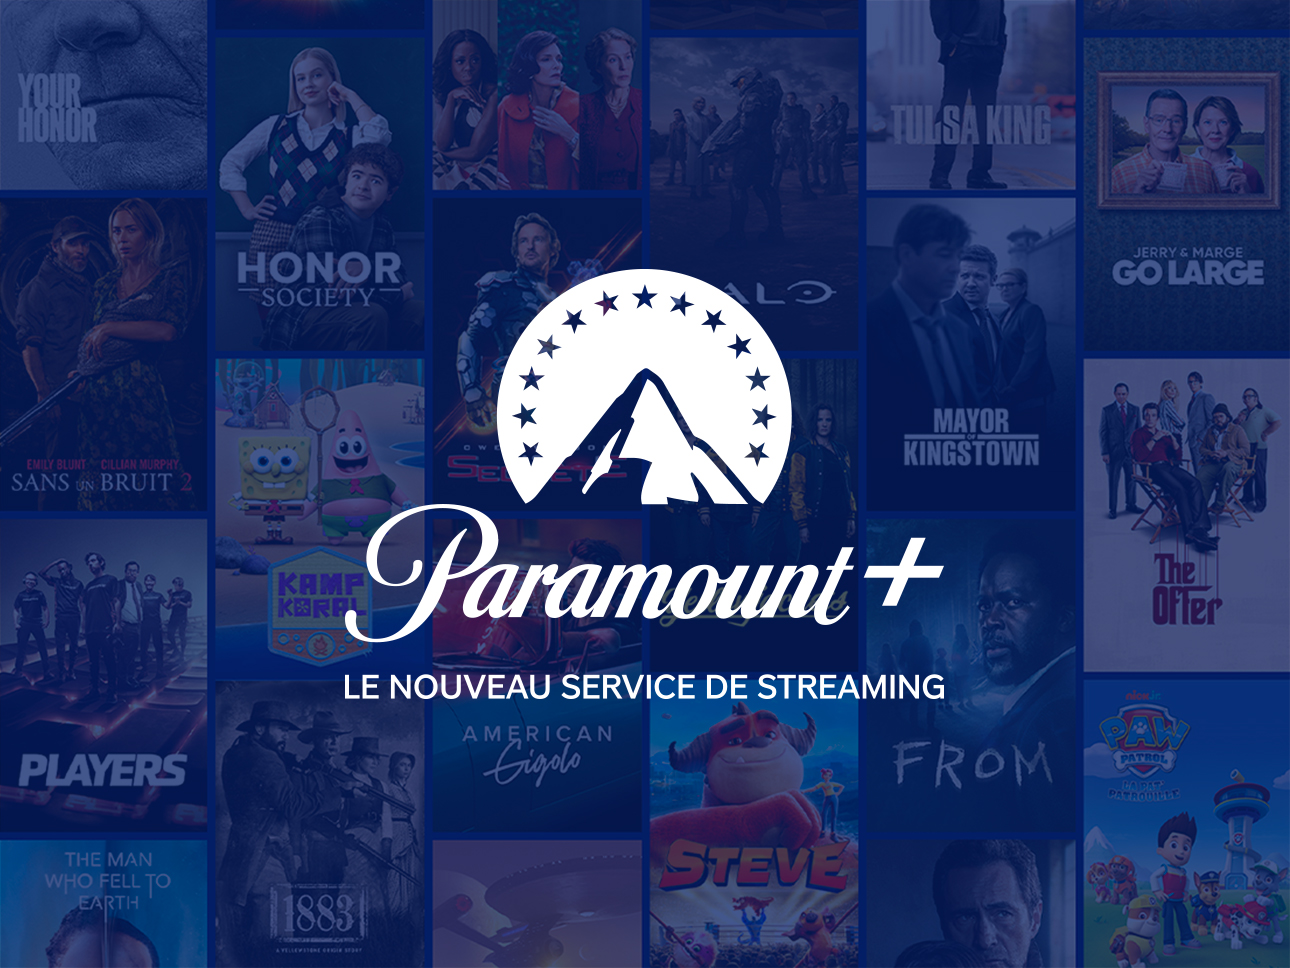 Paramount+ erscheint morgen auf Canal+ und Orange TV